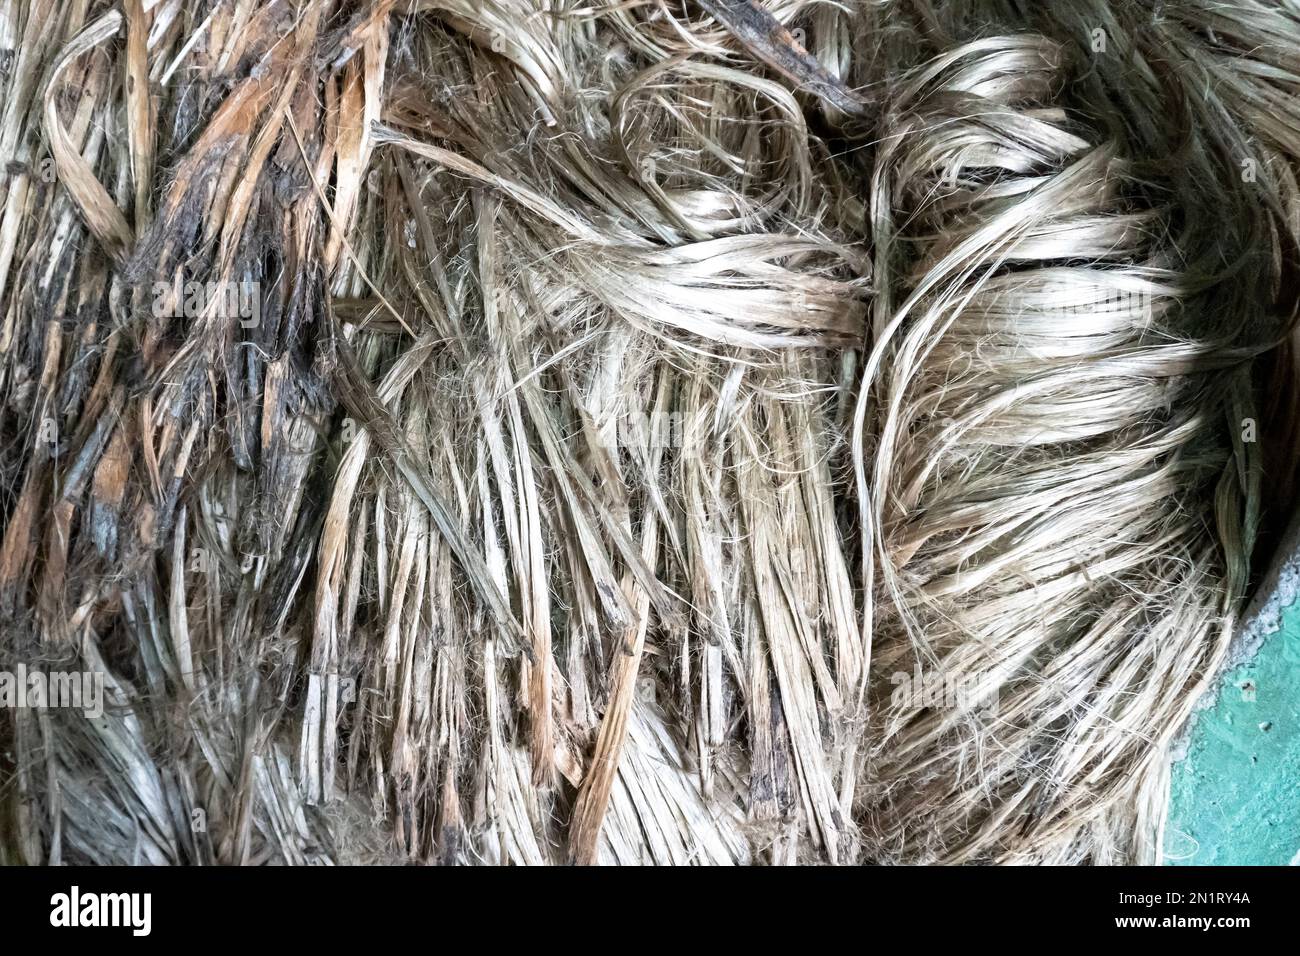 Coltivazione della iuta a Gaibandha, Bangladesh. Struttura di fibra di iuta grezza. La iuta è conosciuta come la fibra dorata. È fibra vegetale naturale marrone giallastro. Foto Stock